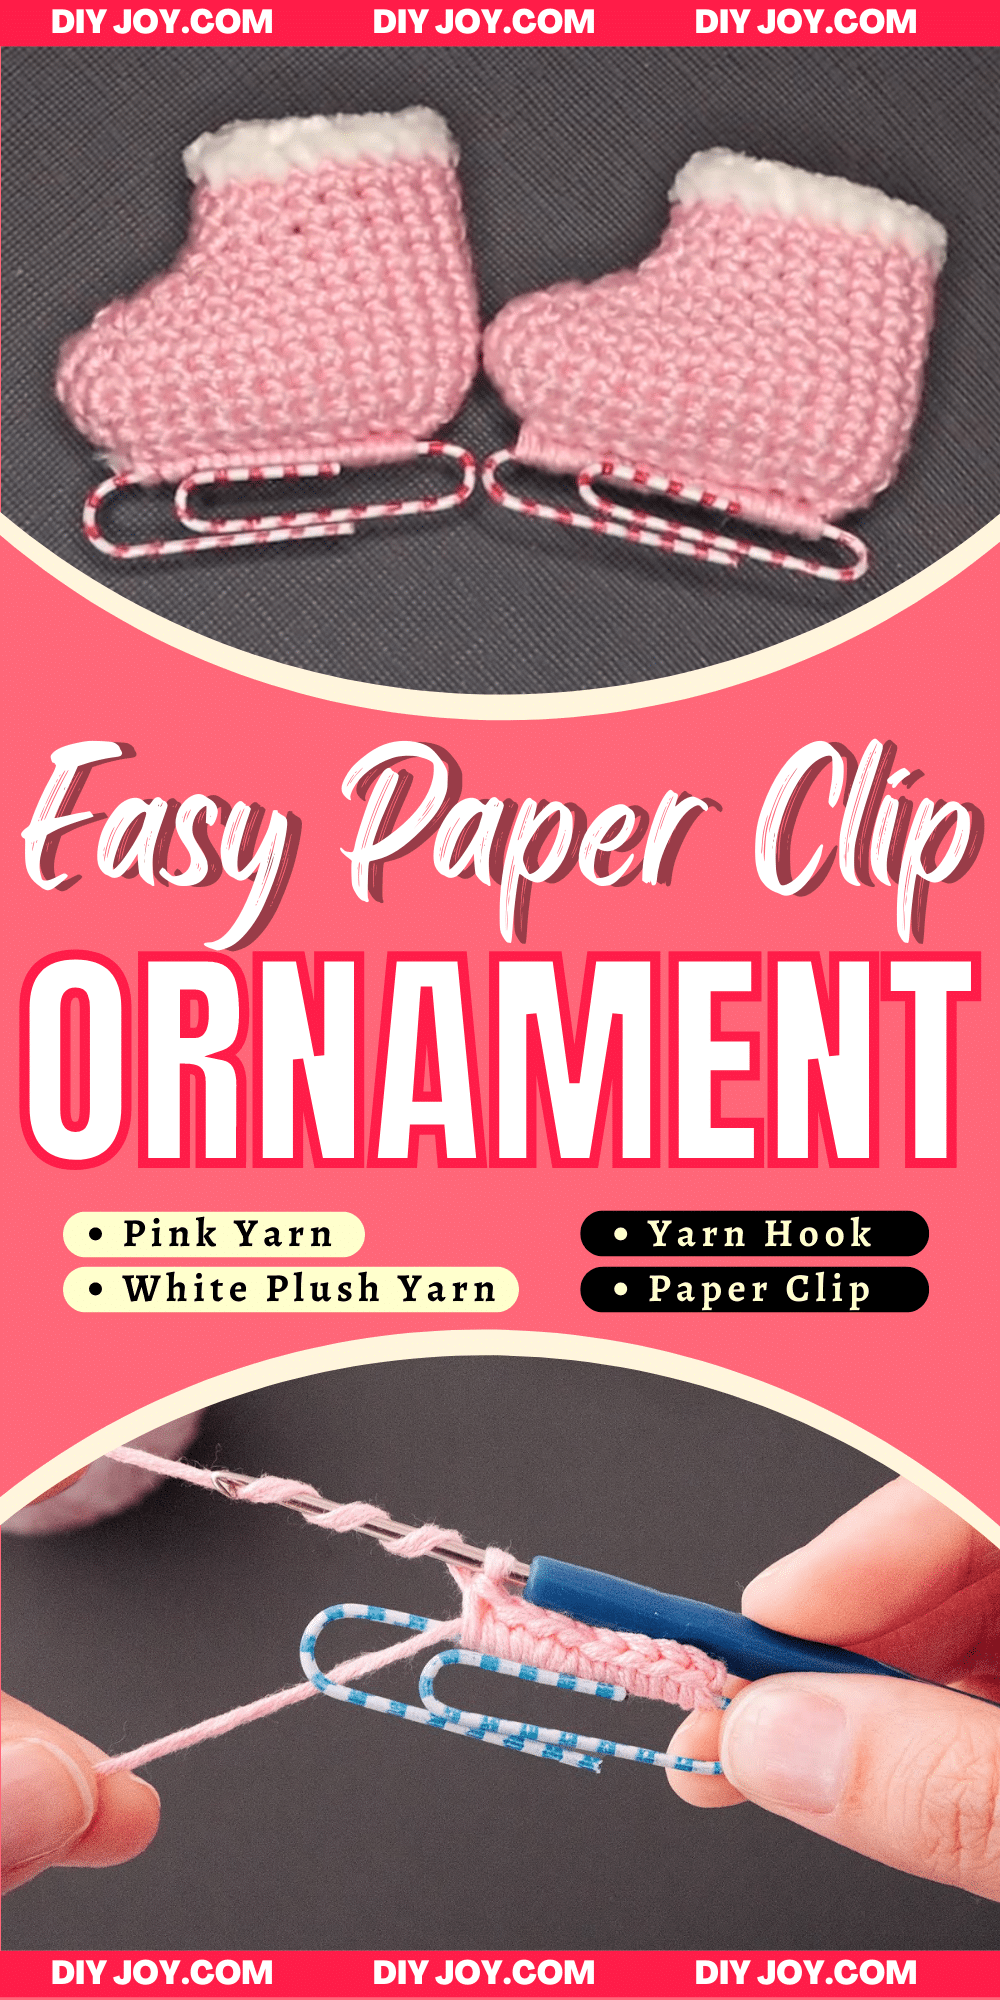 https://diyjoy.com/wp-content/uploads/2021/12/Easy-Paper-Clip-Ornament-Tutorial.png